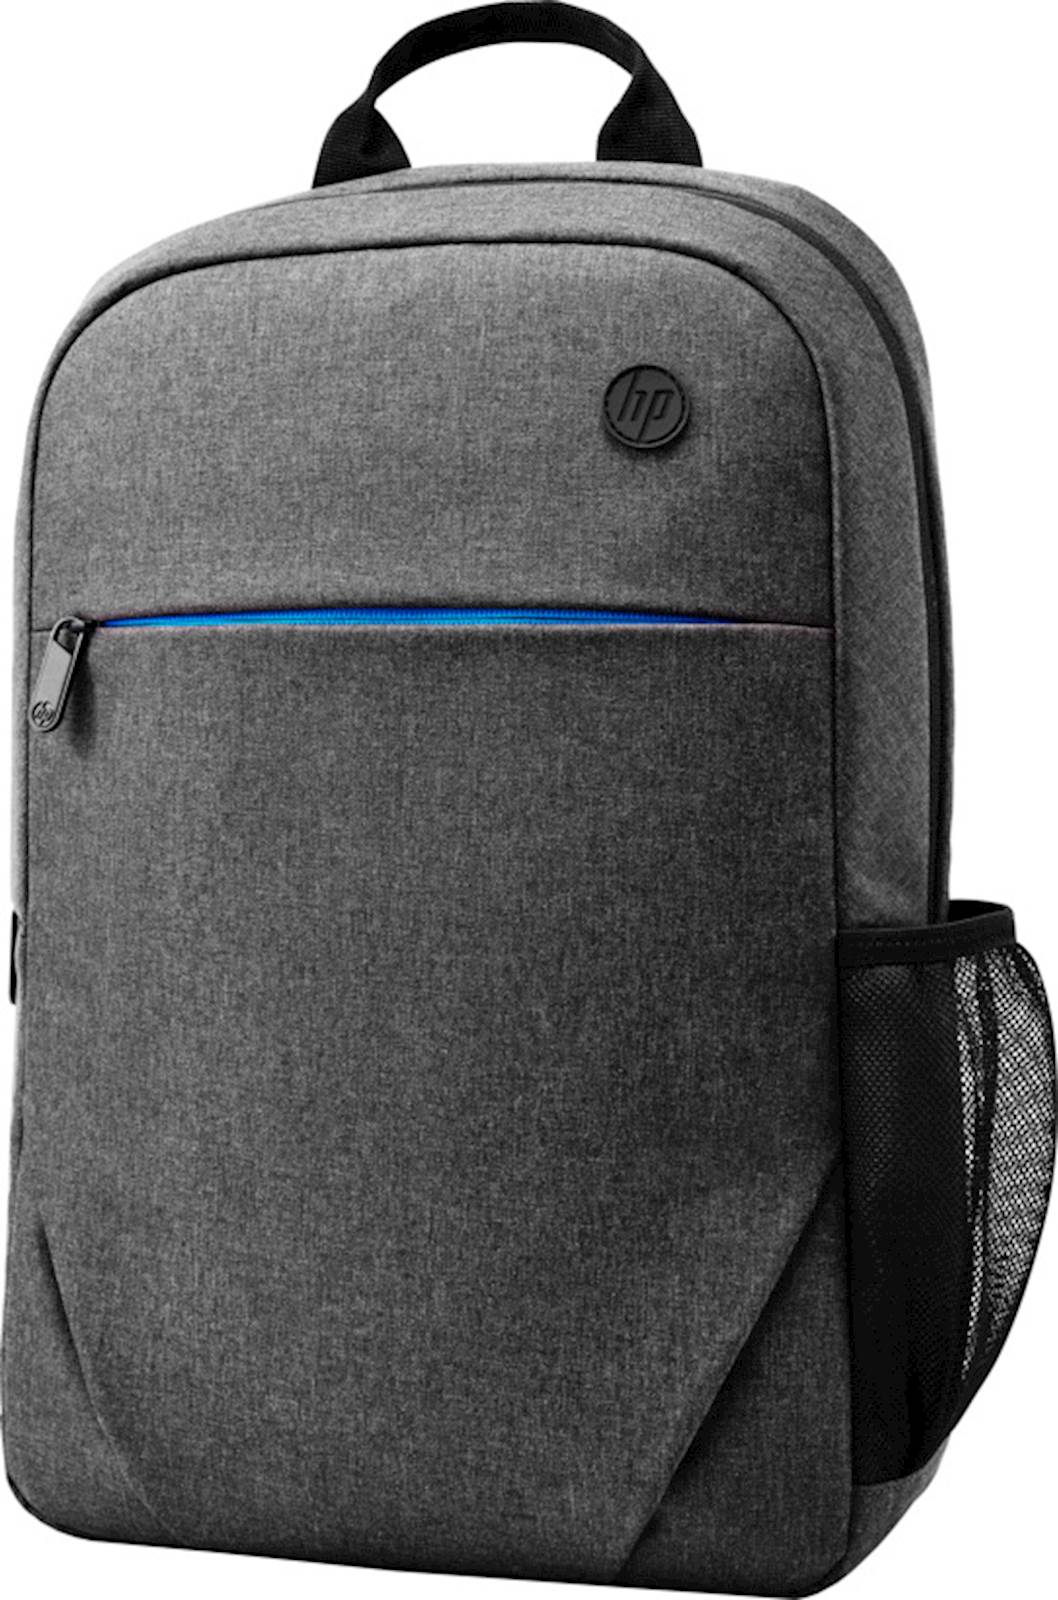 Ruksak HP Prelude 15.6 Backpack